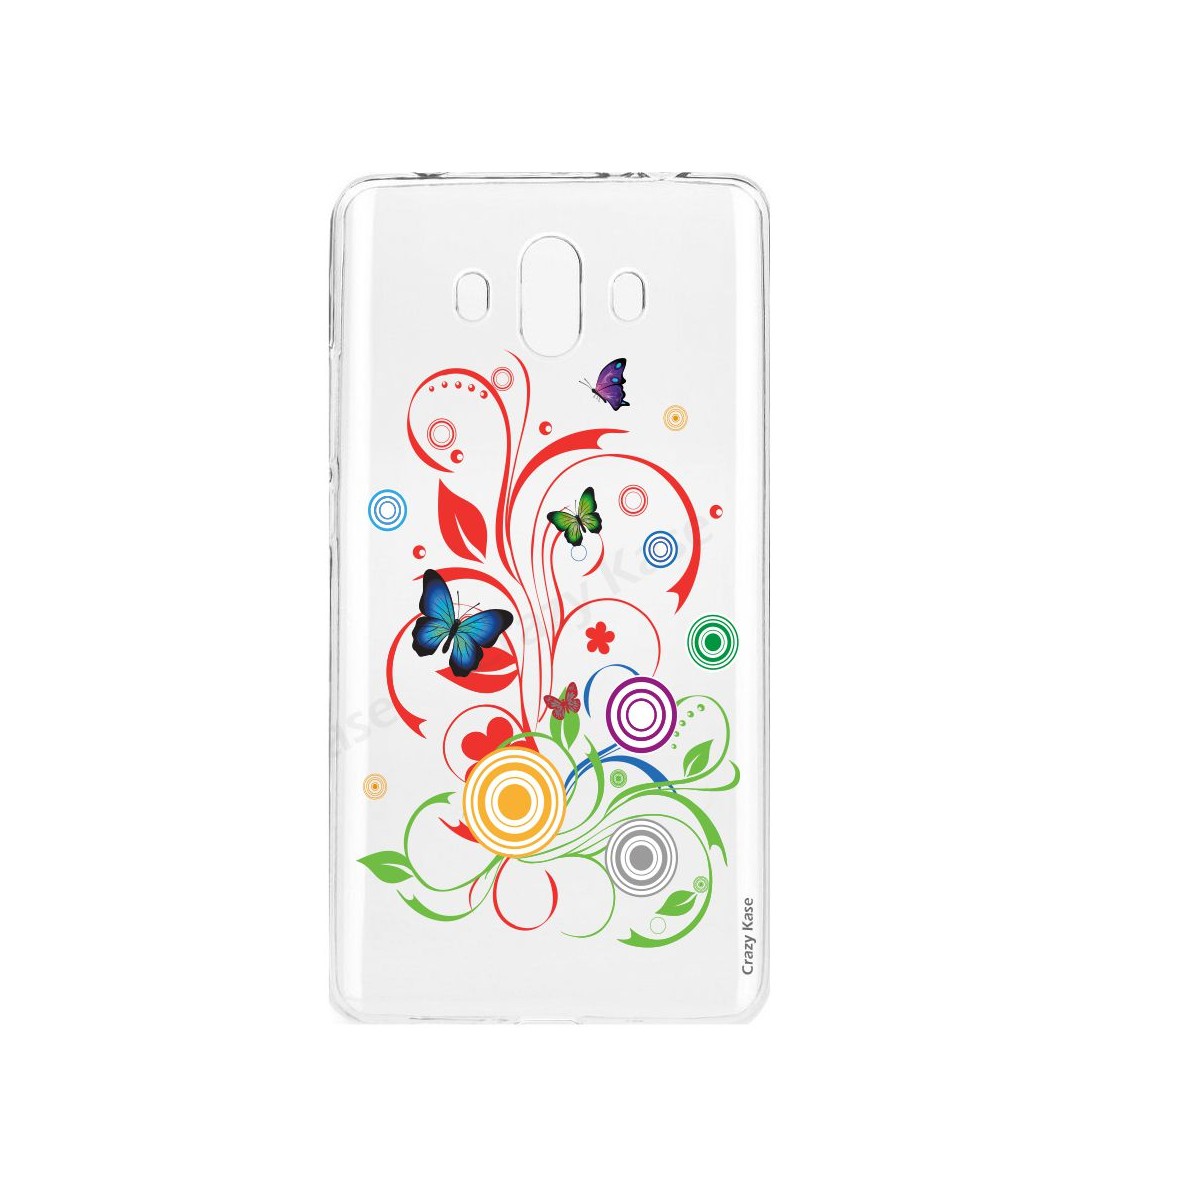 Coque Huawei Mate 10 souple motif Papillons et Cercles - Crazy Kase